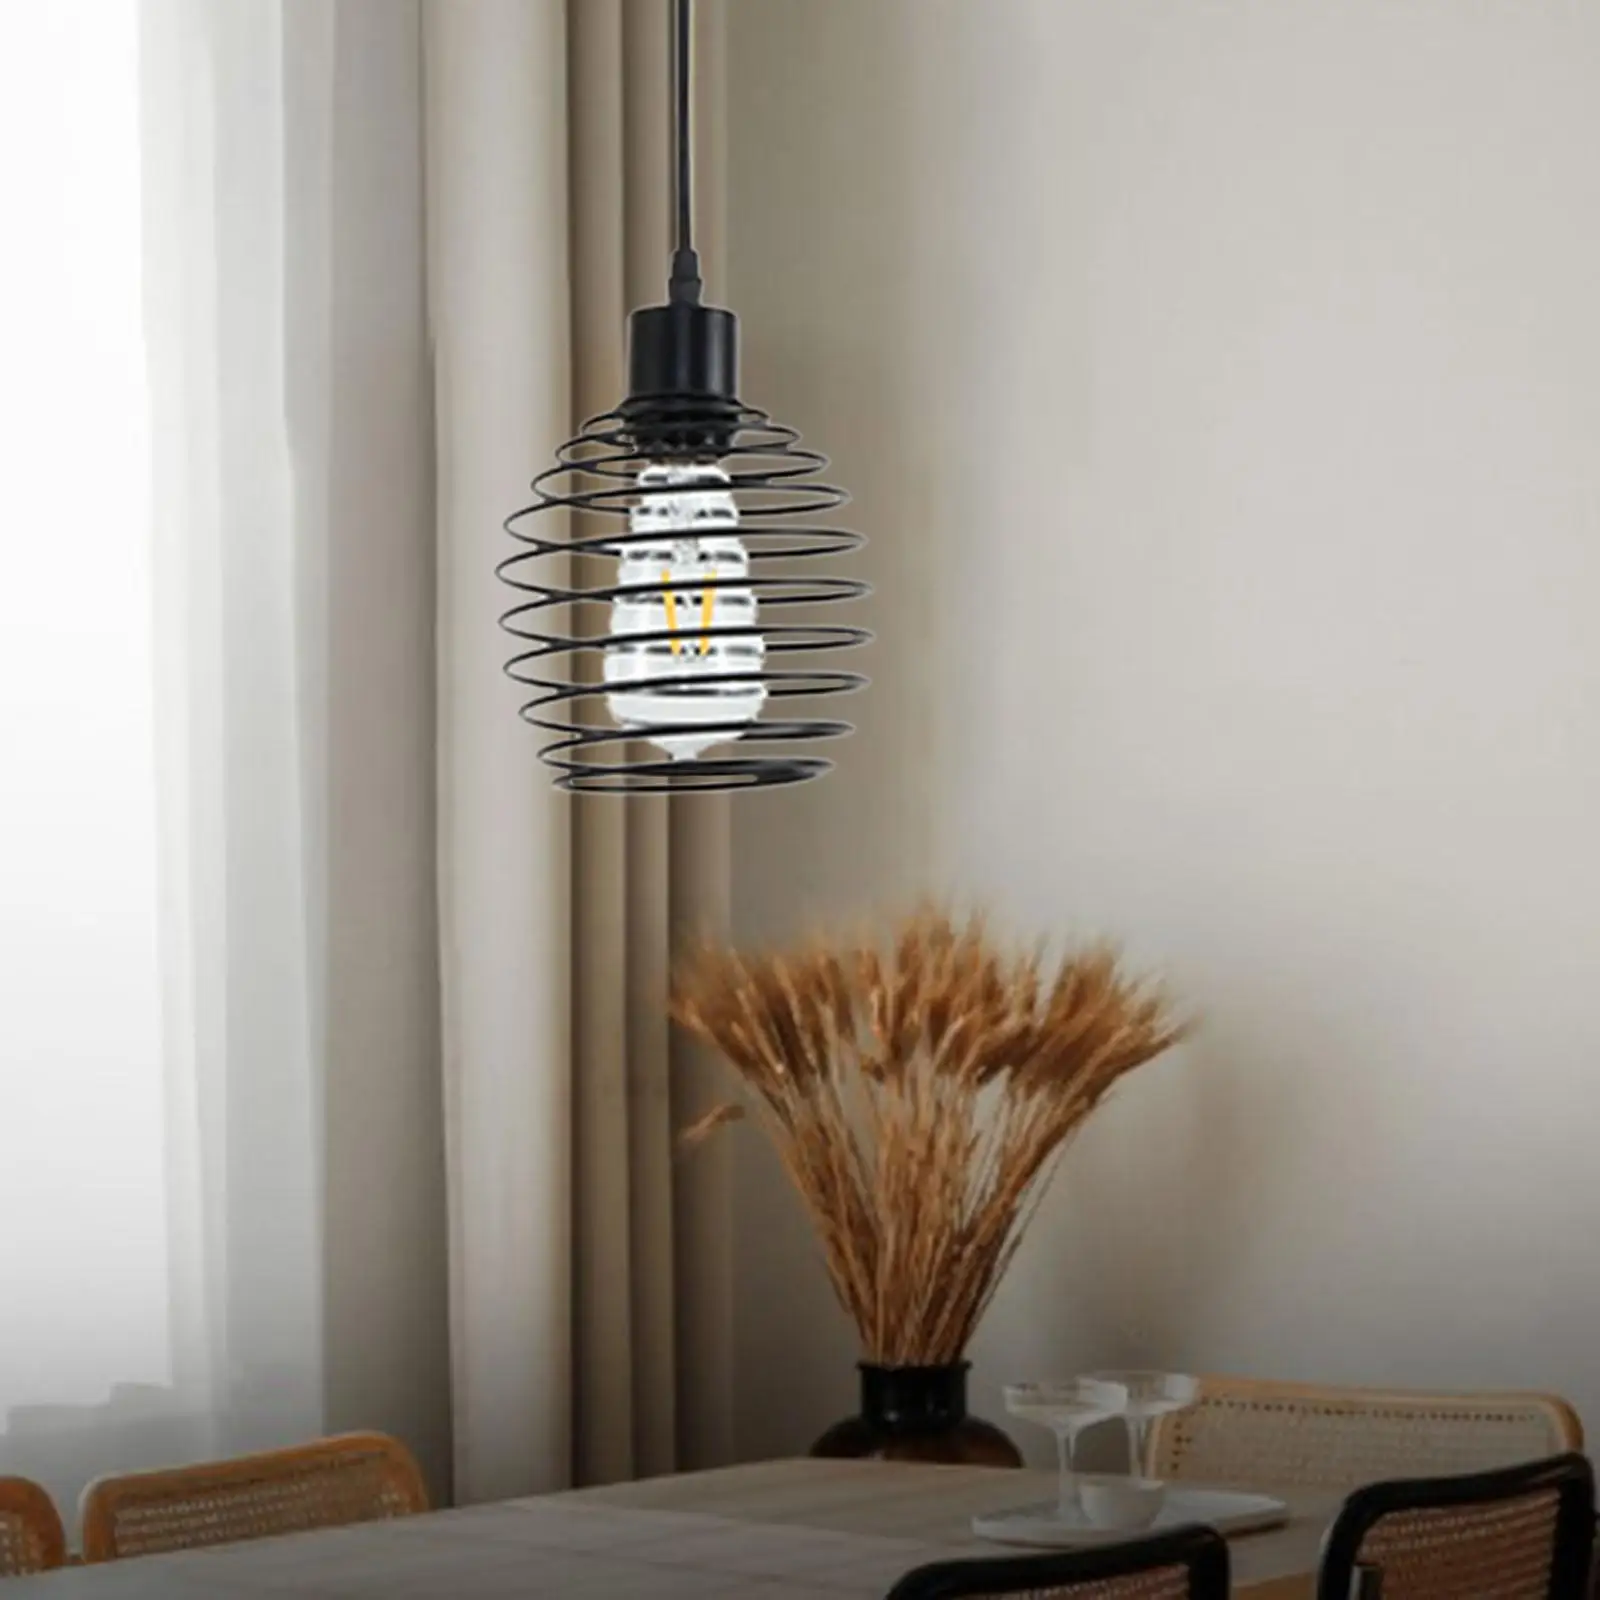 Nordic Celling Light Lamp Pendent Light E27 for Office Restaurant Decoration